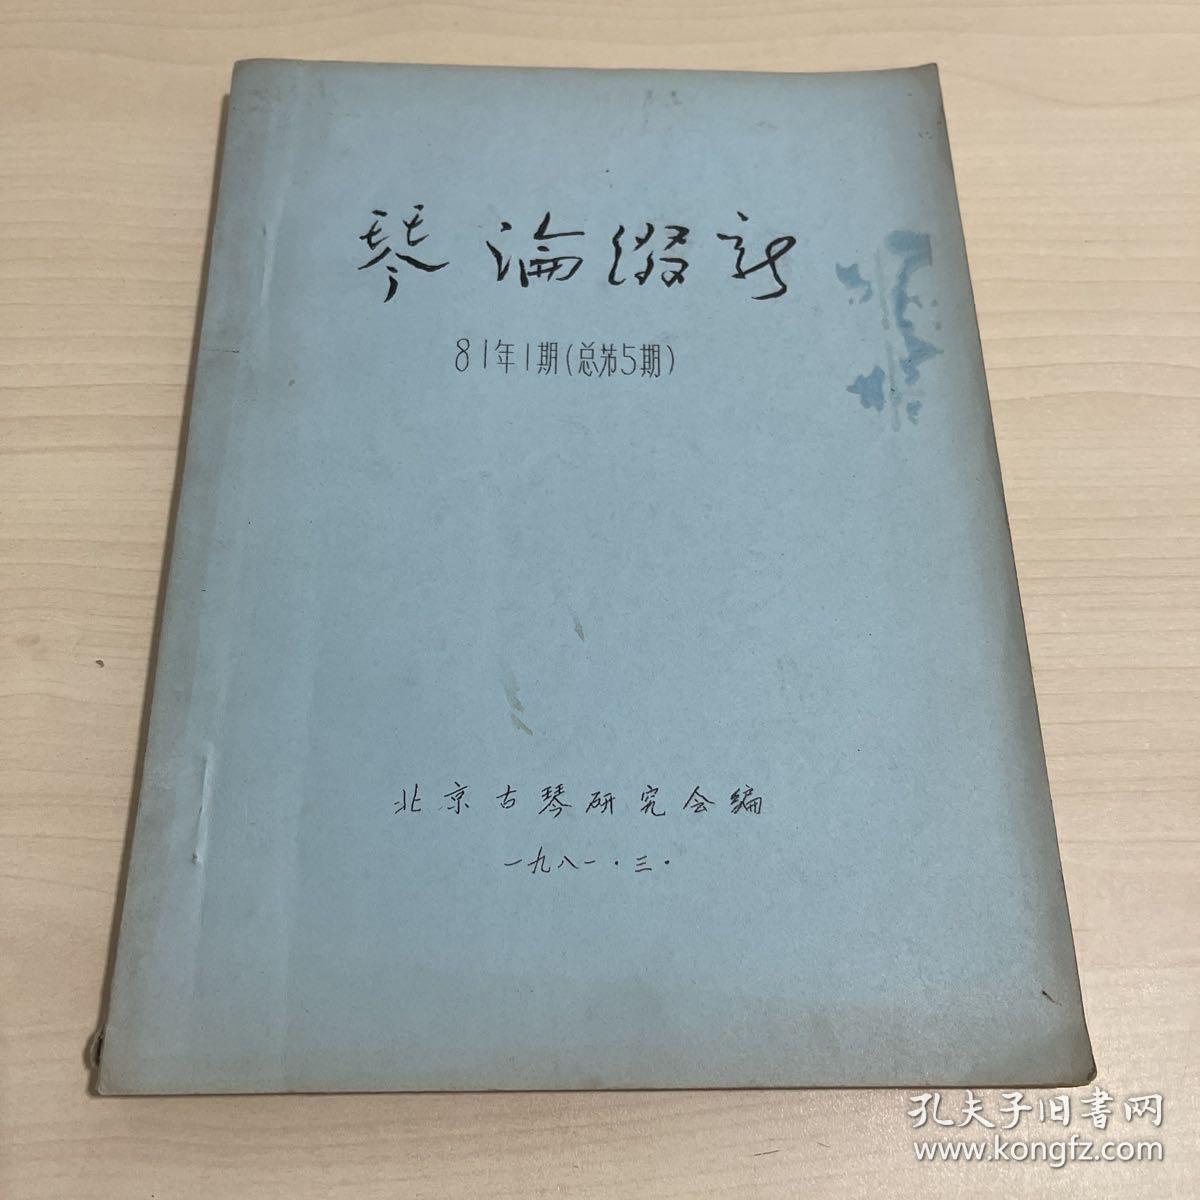 稀见古琴期刊资料《琴论缀新 》北京古琴研究会1981年3月第1期总第5期